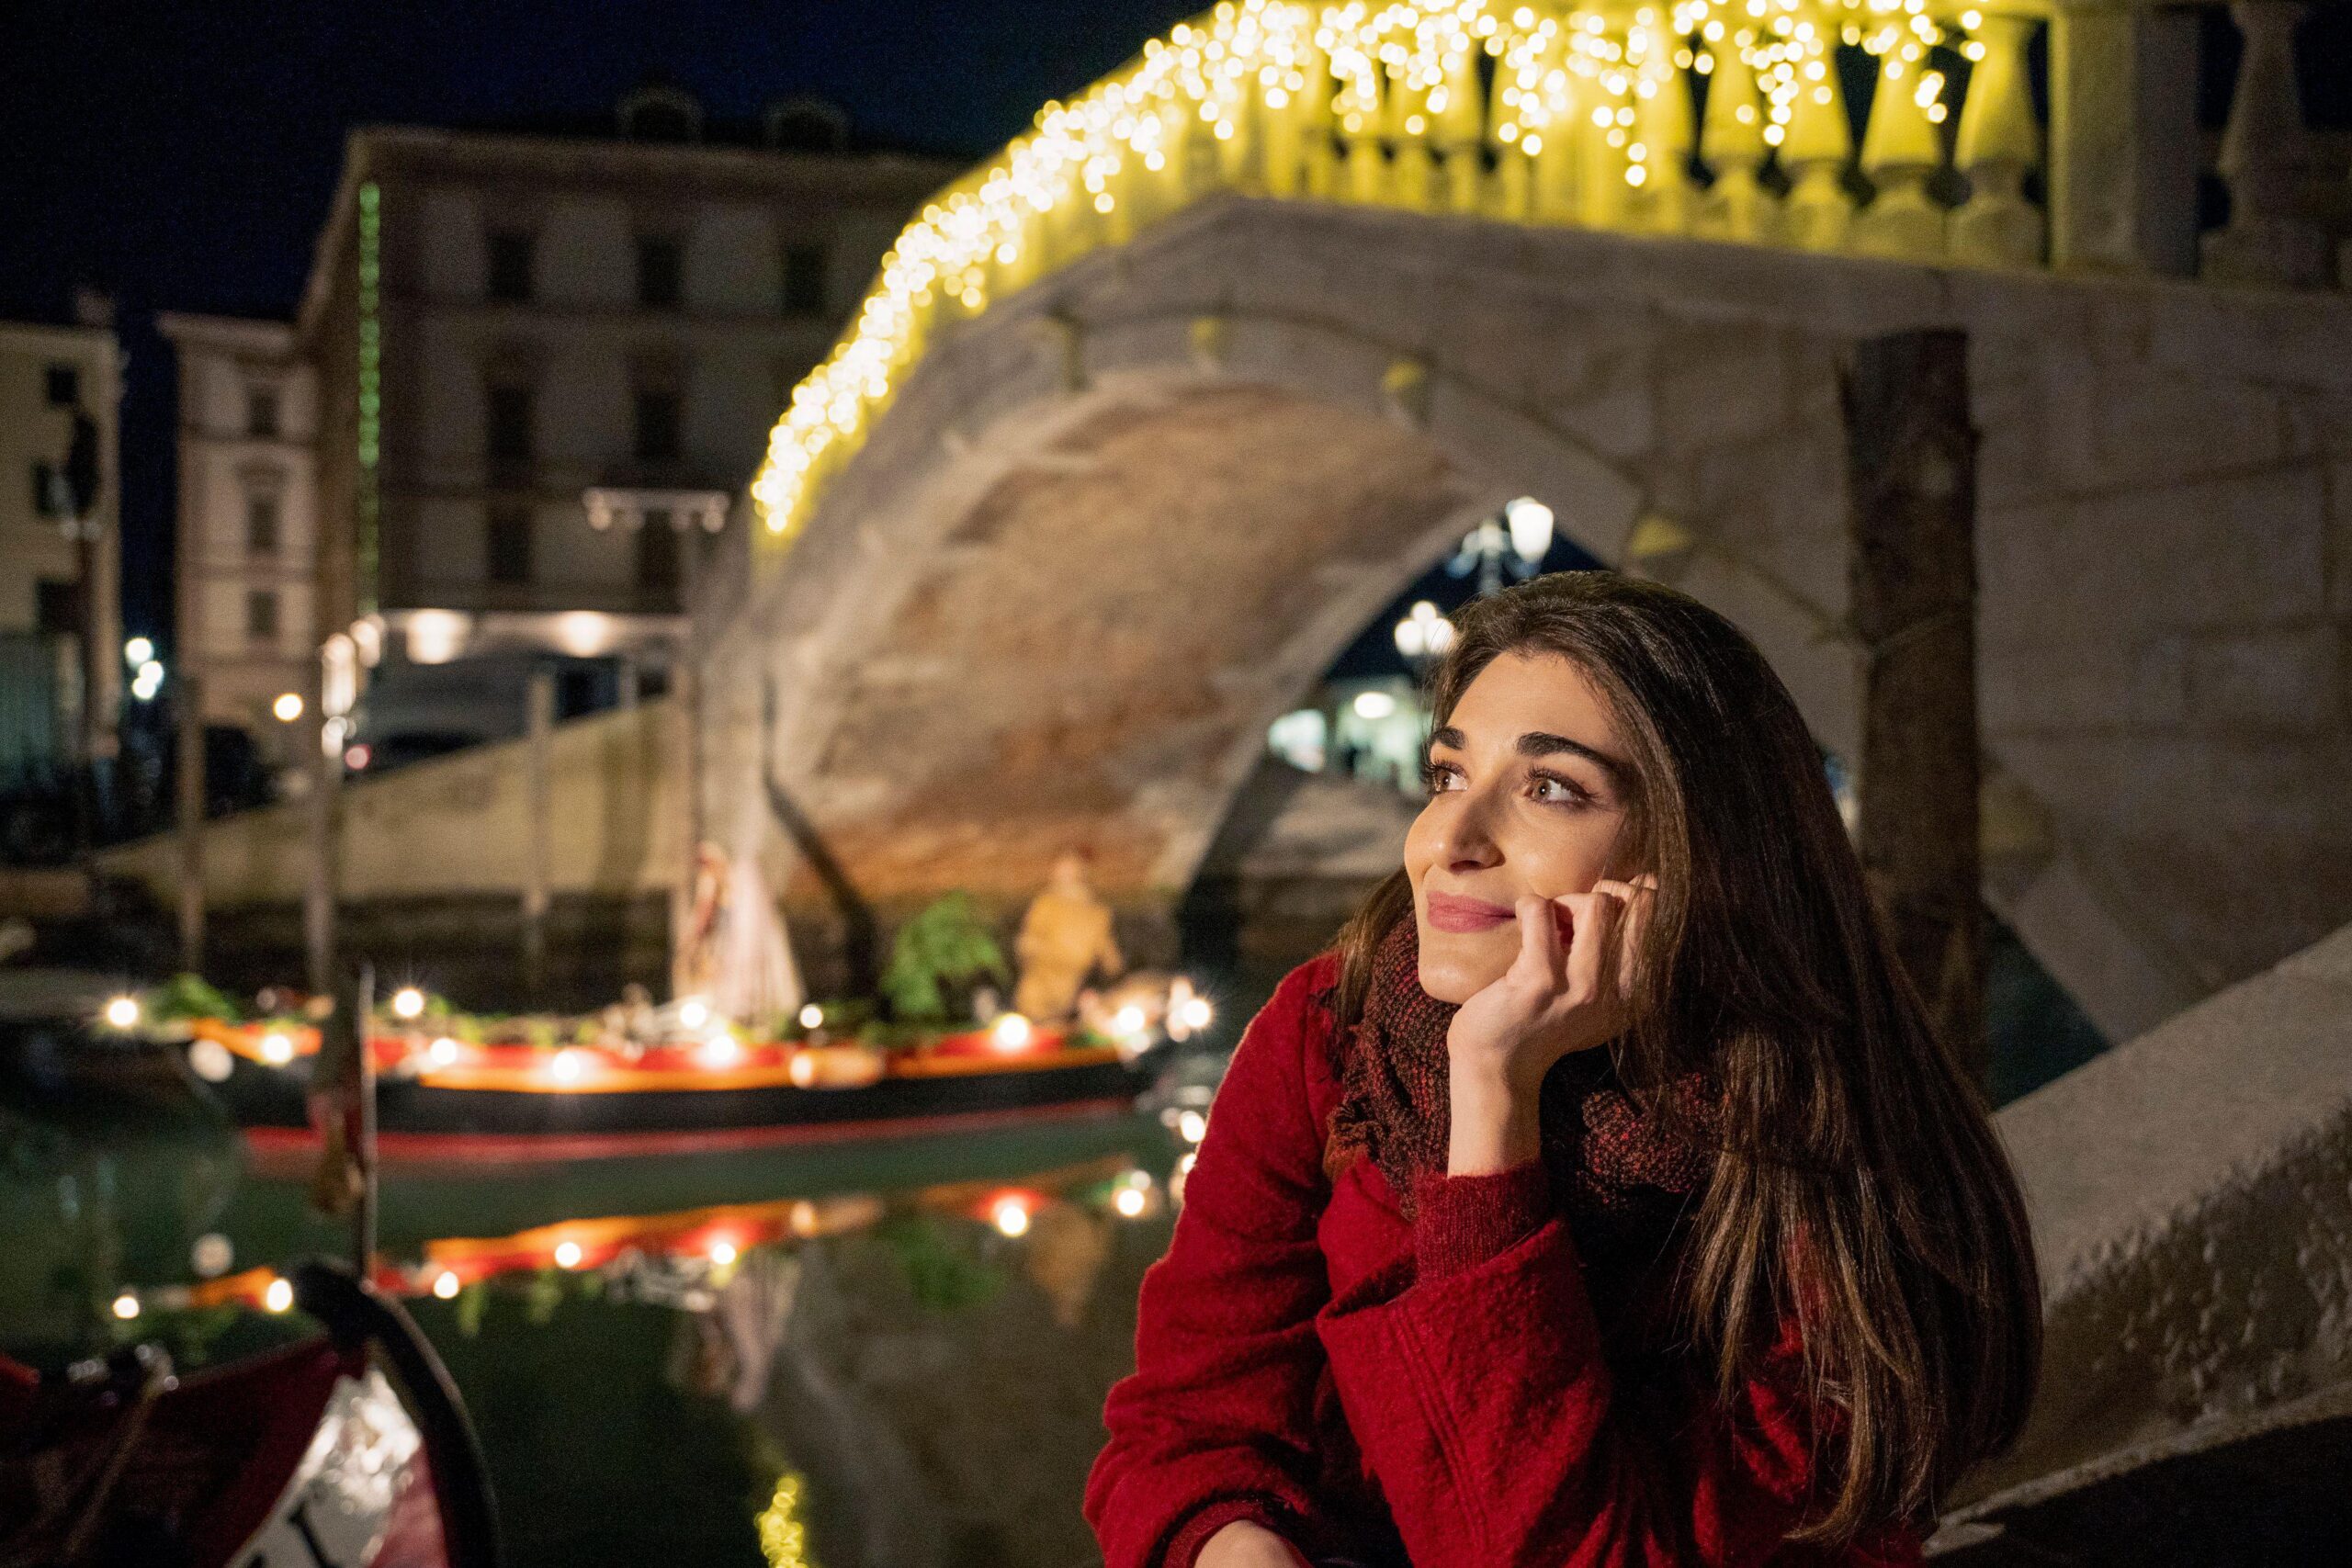 Esce domani “Odio il Natale”, la serie tv su Netflix girata a Chioggia